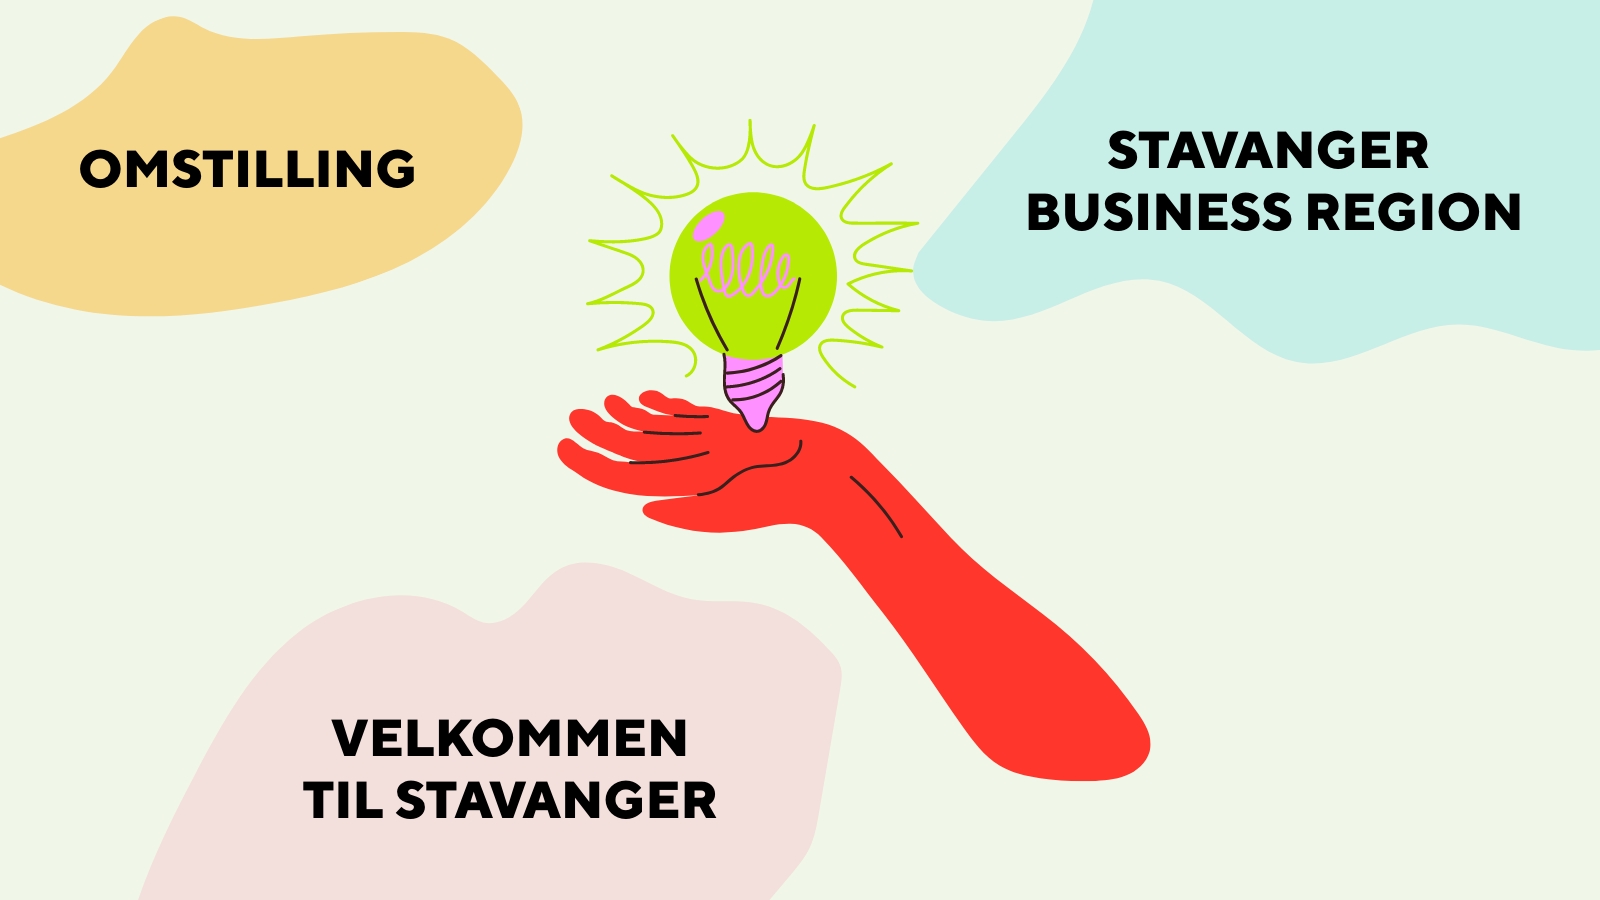 Innsatsområder: Omstilling, Stavanger Business Region og Velkommen til Stavanger